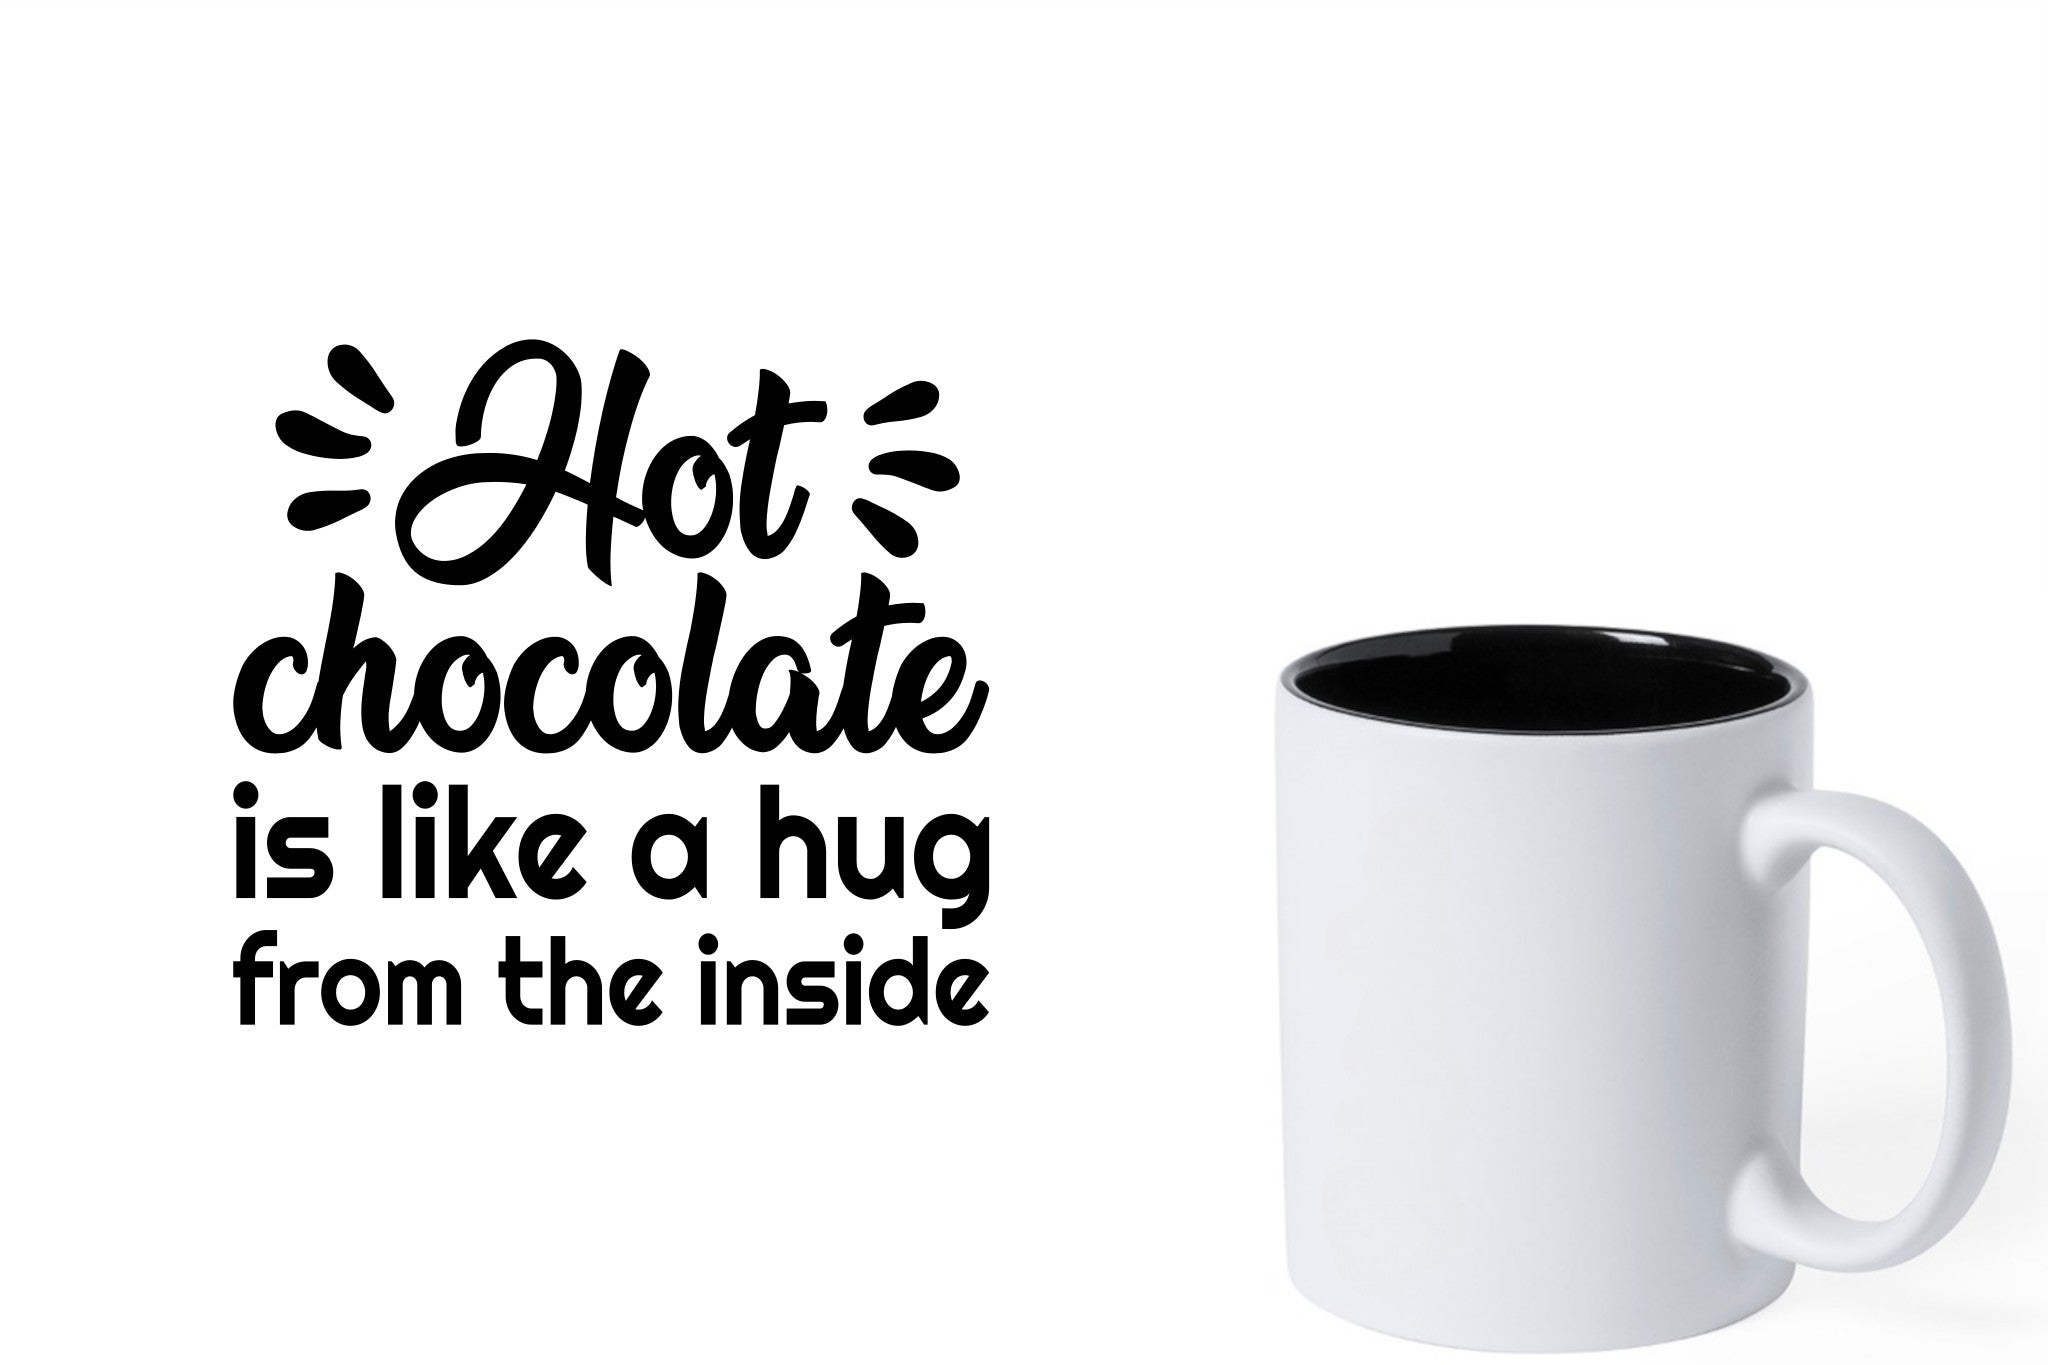 Witte keramische mok met zwarte gravure  'Hot chocolate is like a hug from the inside'.